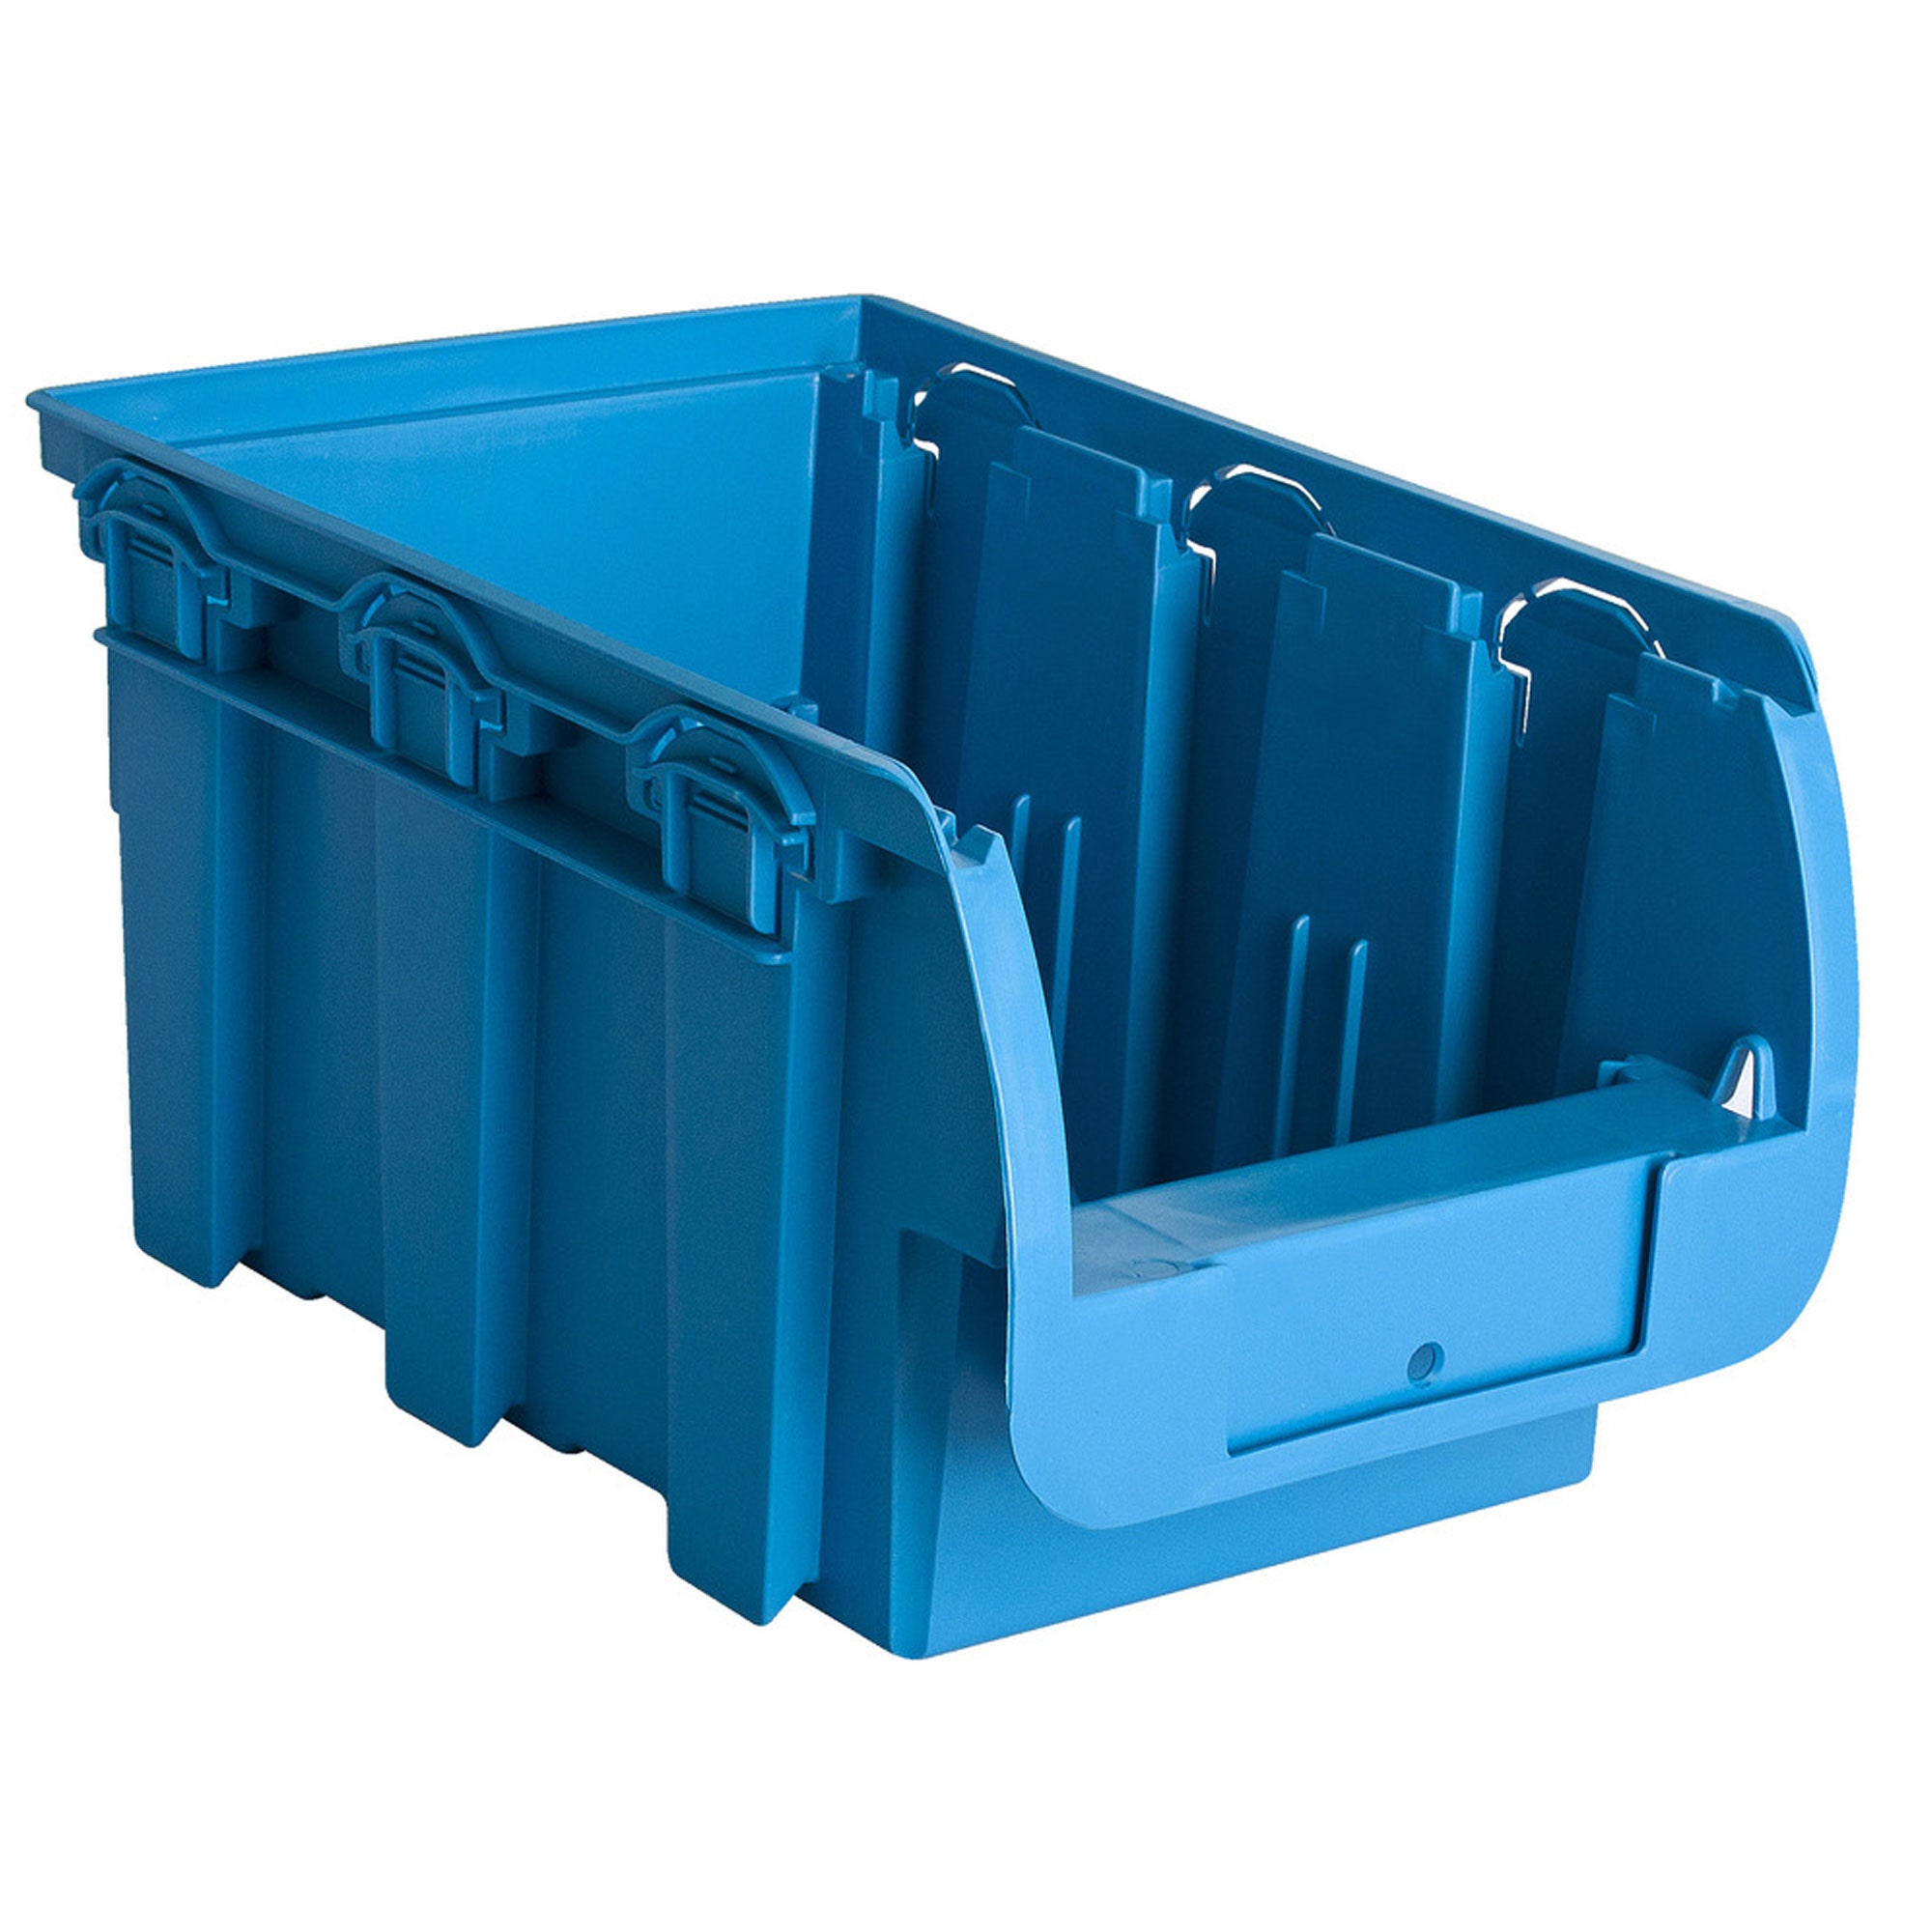 Cutie pentru depozitare, Unior 625750, albastru, 330 x 200 x 150 mm, set 3 bucati